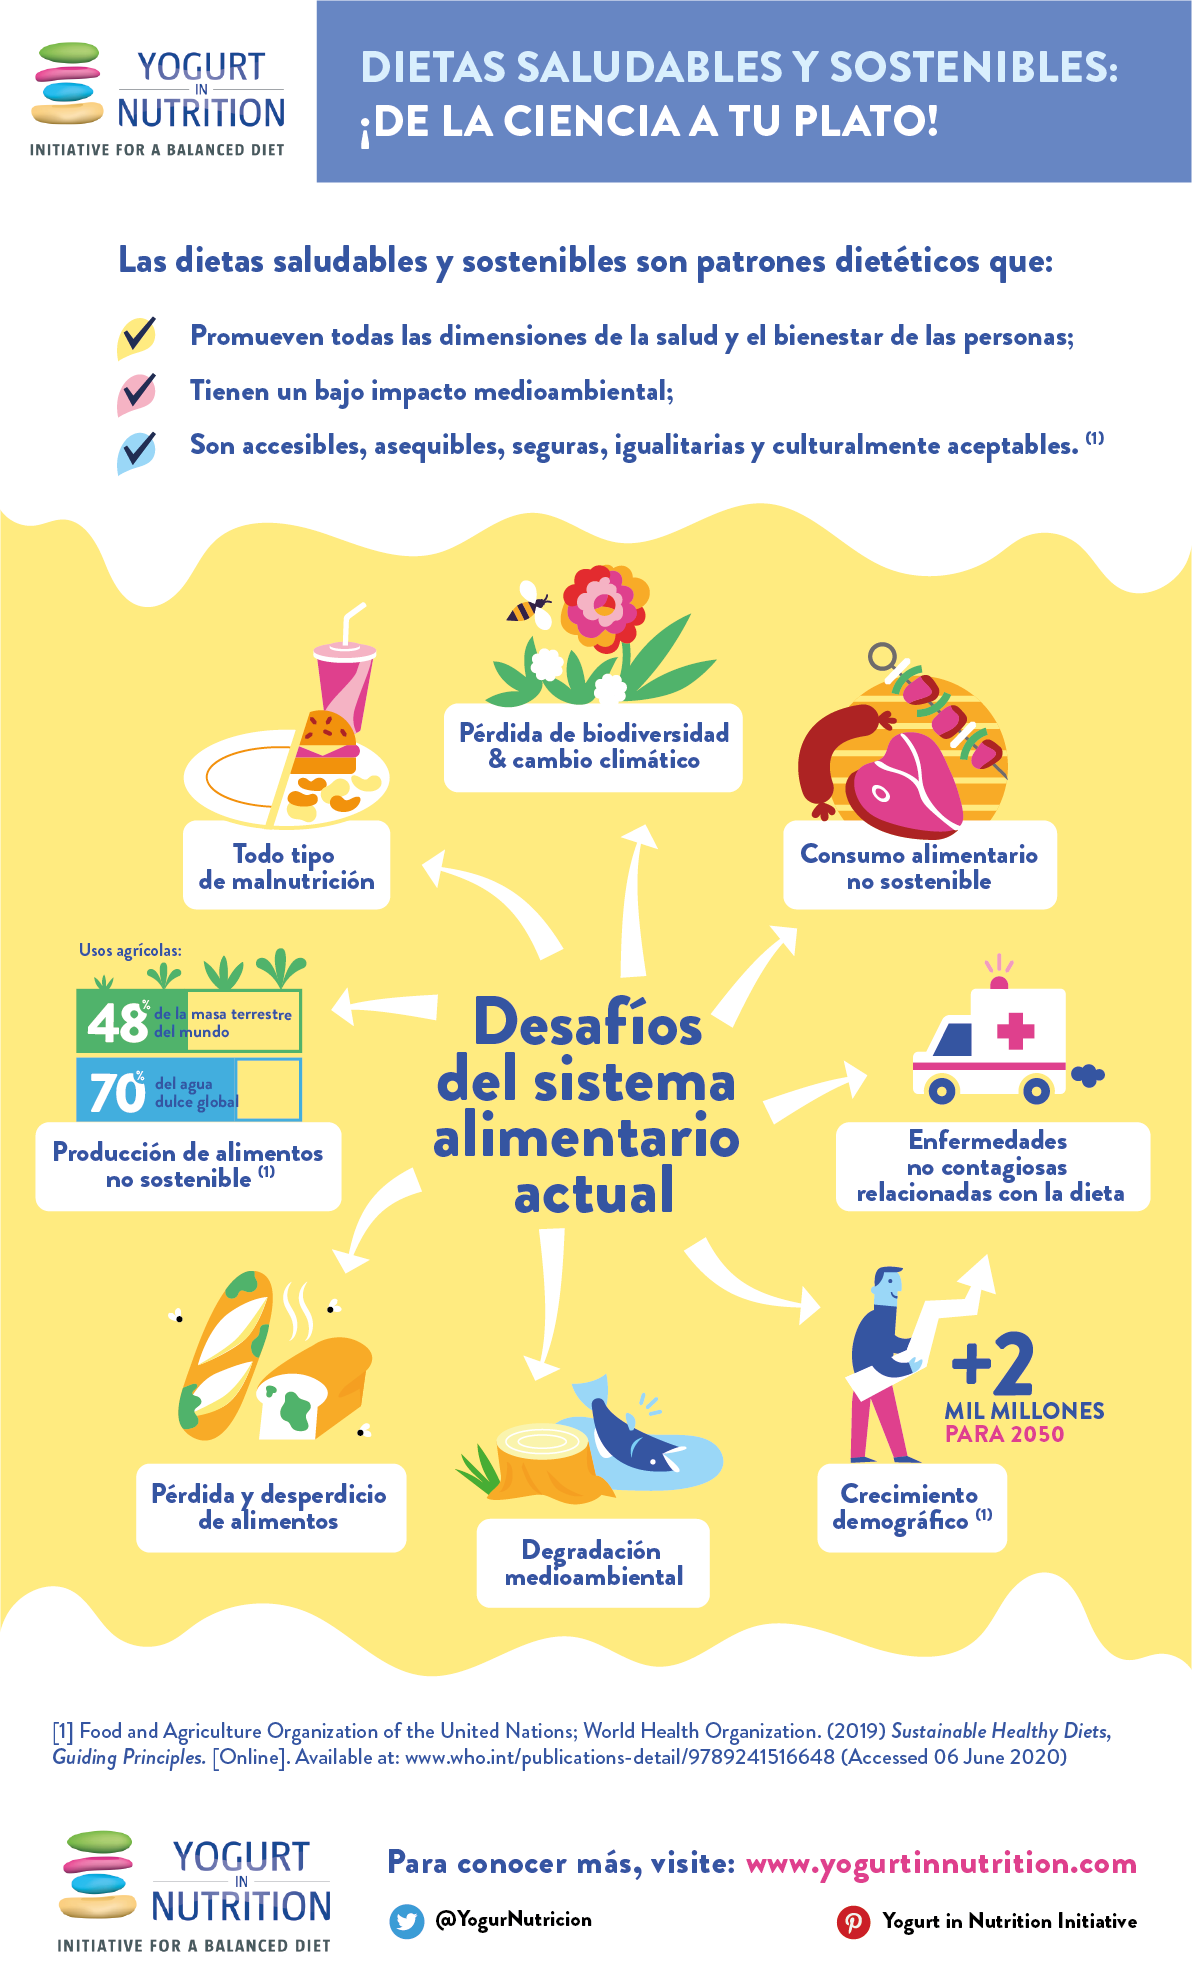 Dietas saludables y sostenibles: infografia - Yogurt in Nutrition